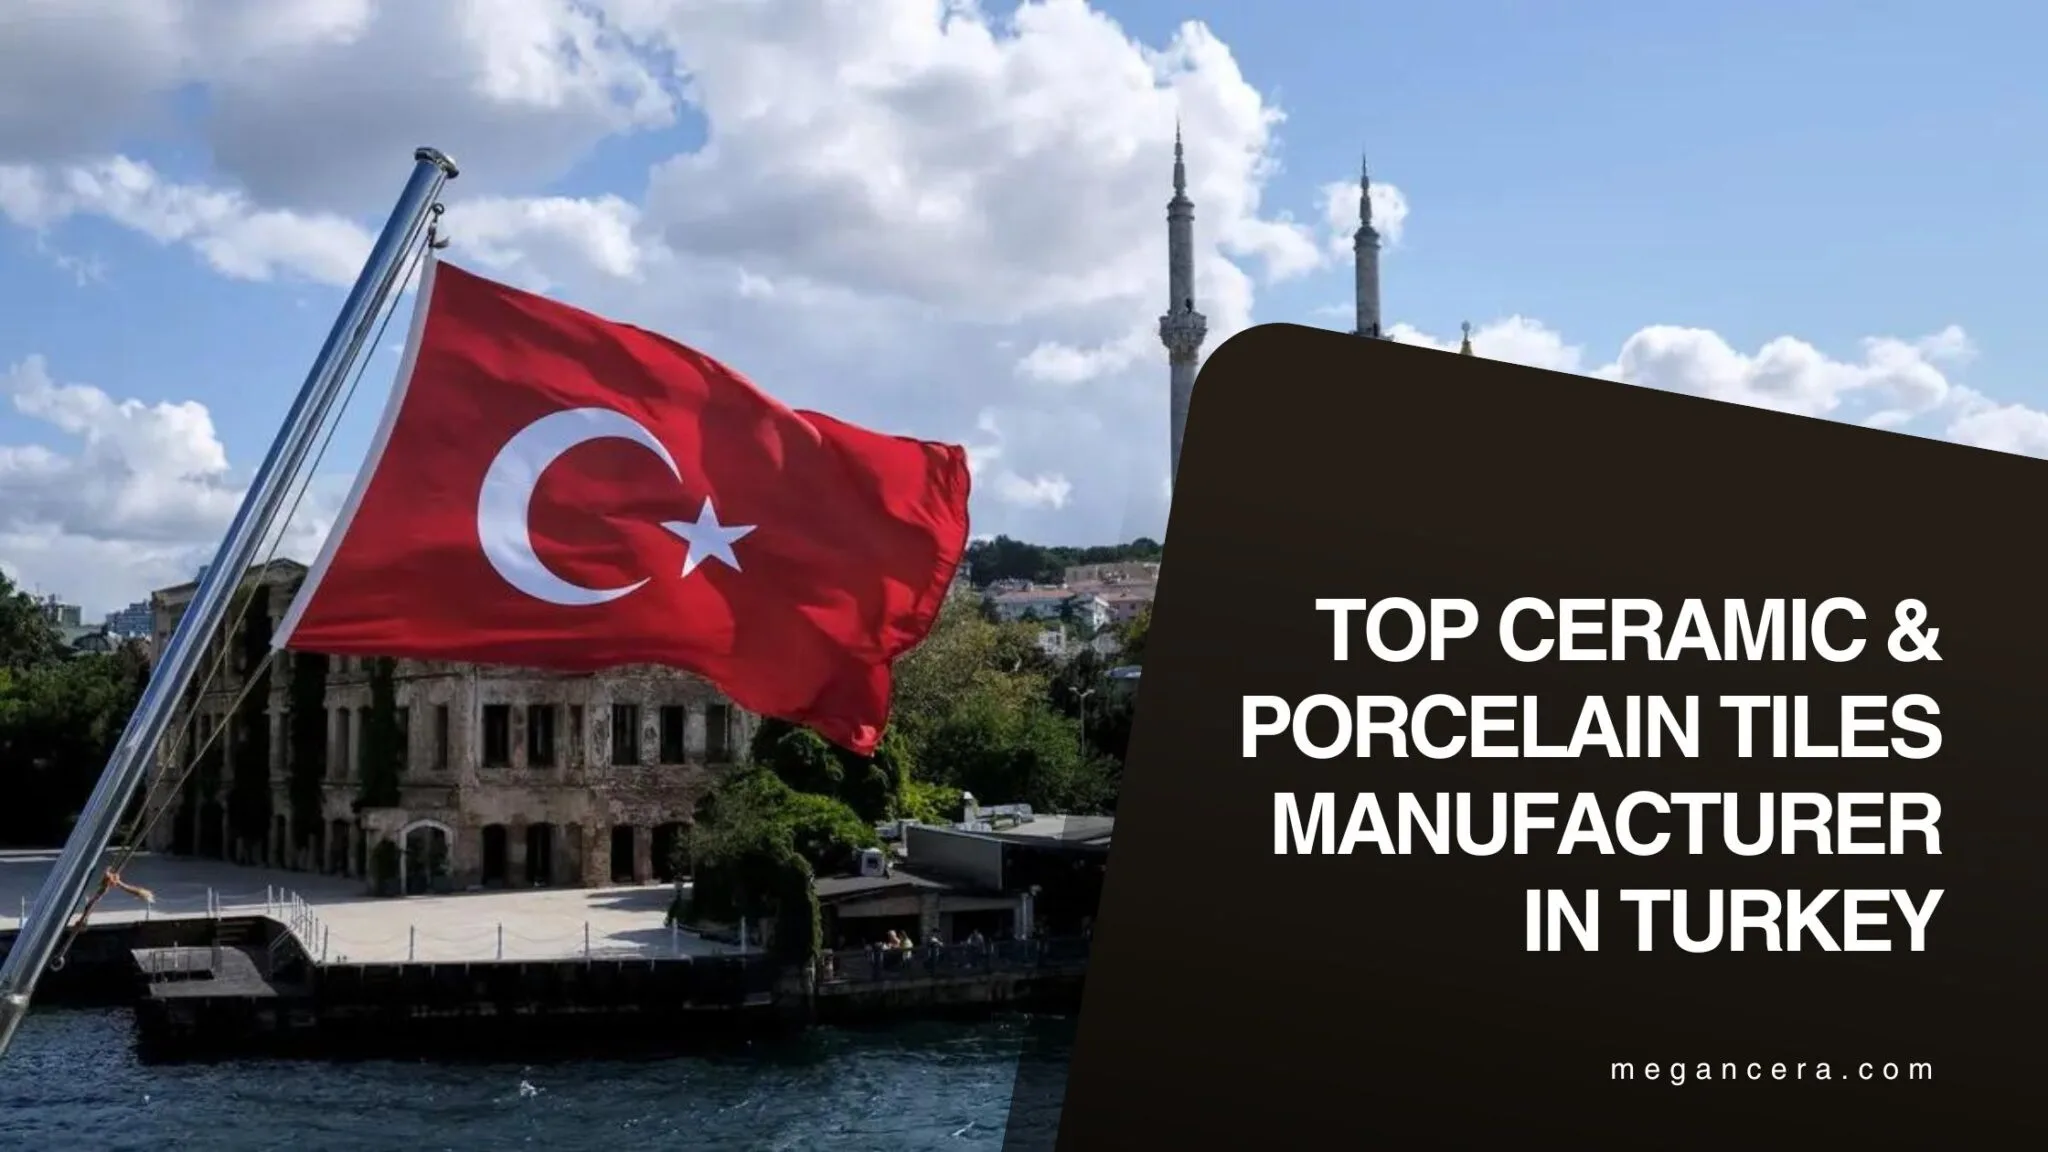 Top Ceramic & Porcelain Tiles Manufacturer in Turkey